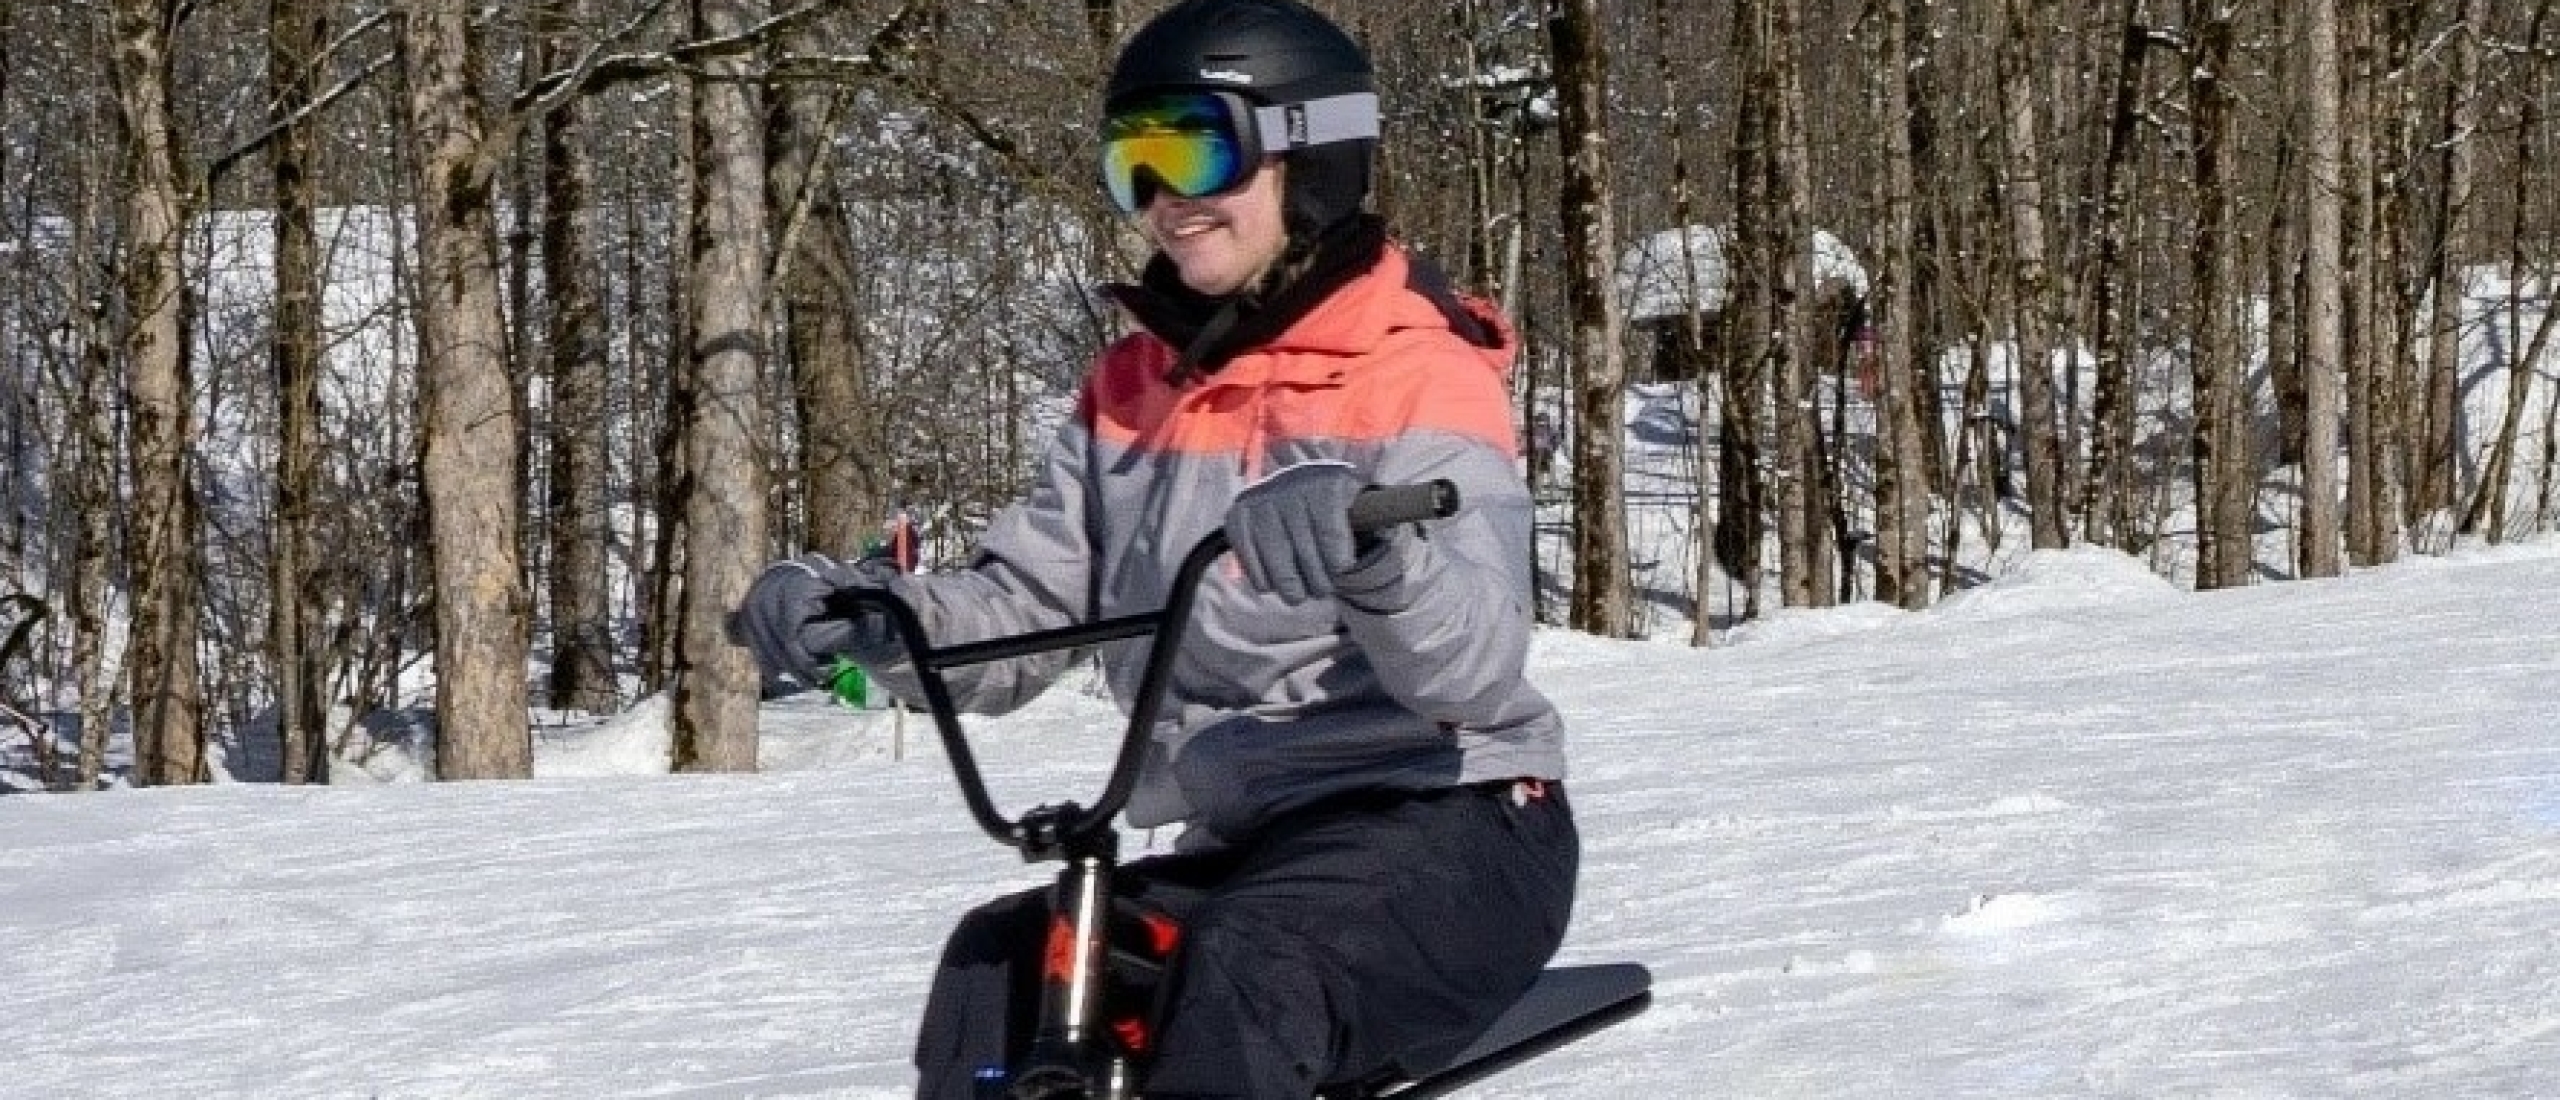 Op skivakantie ondanks lichamelijke beperkingen!